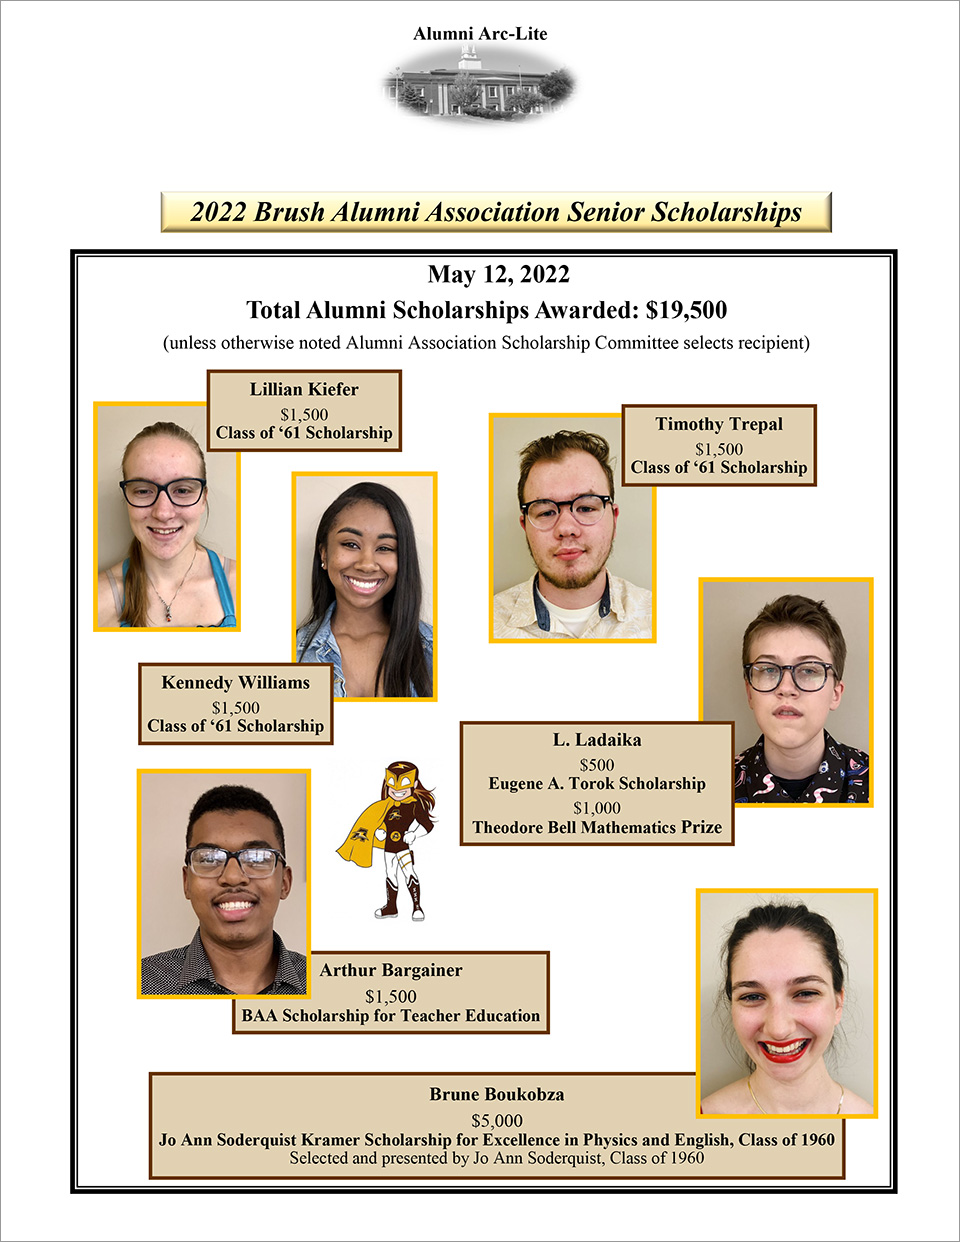 2022 Brush Alumni Association Senior Scholarship recipients.